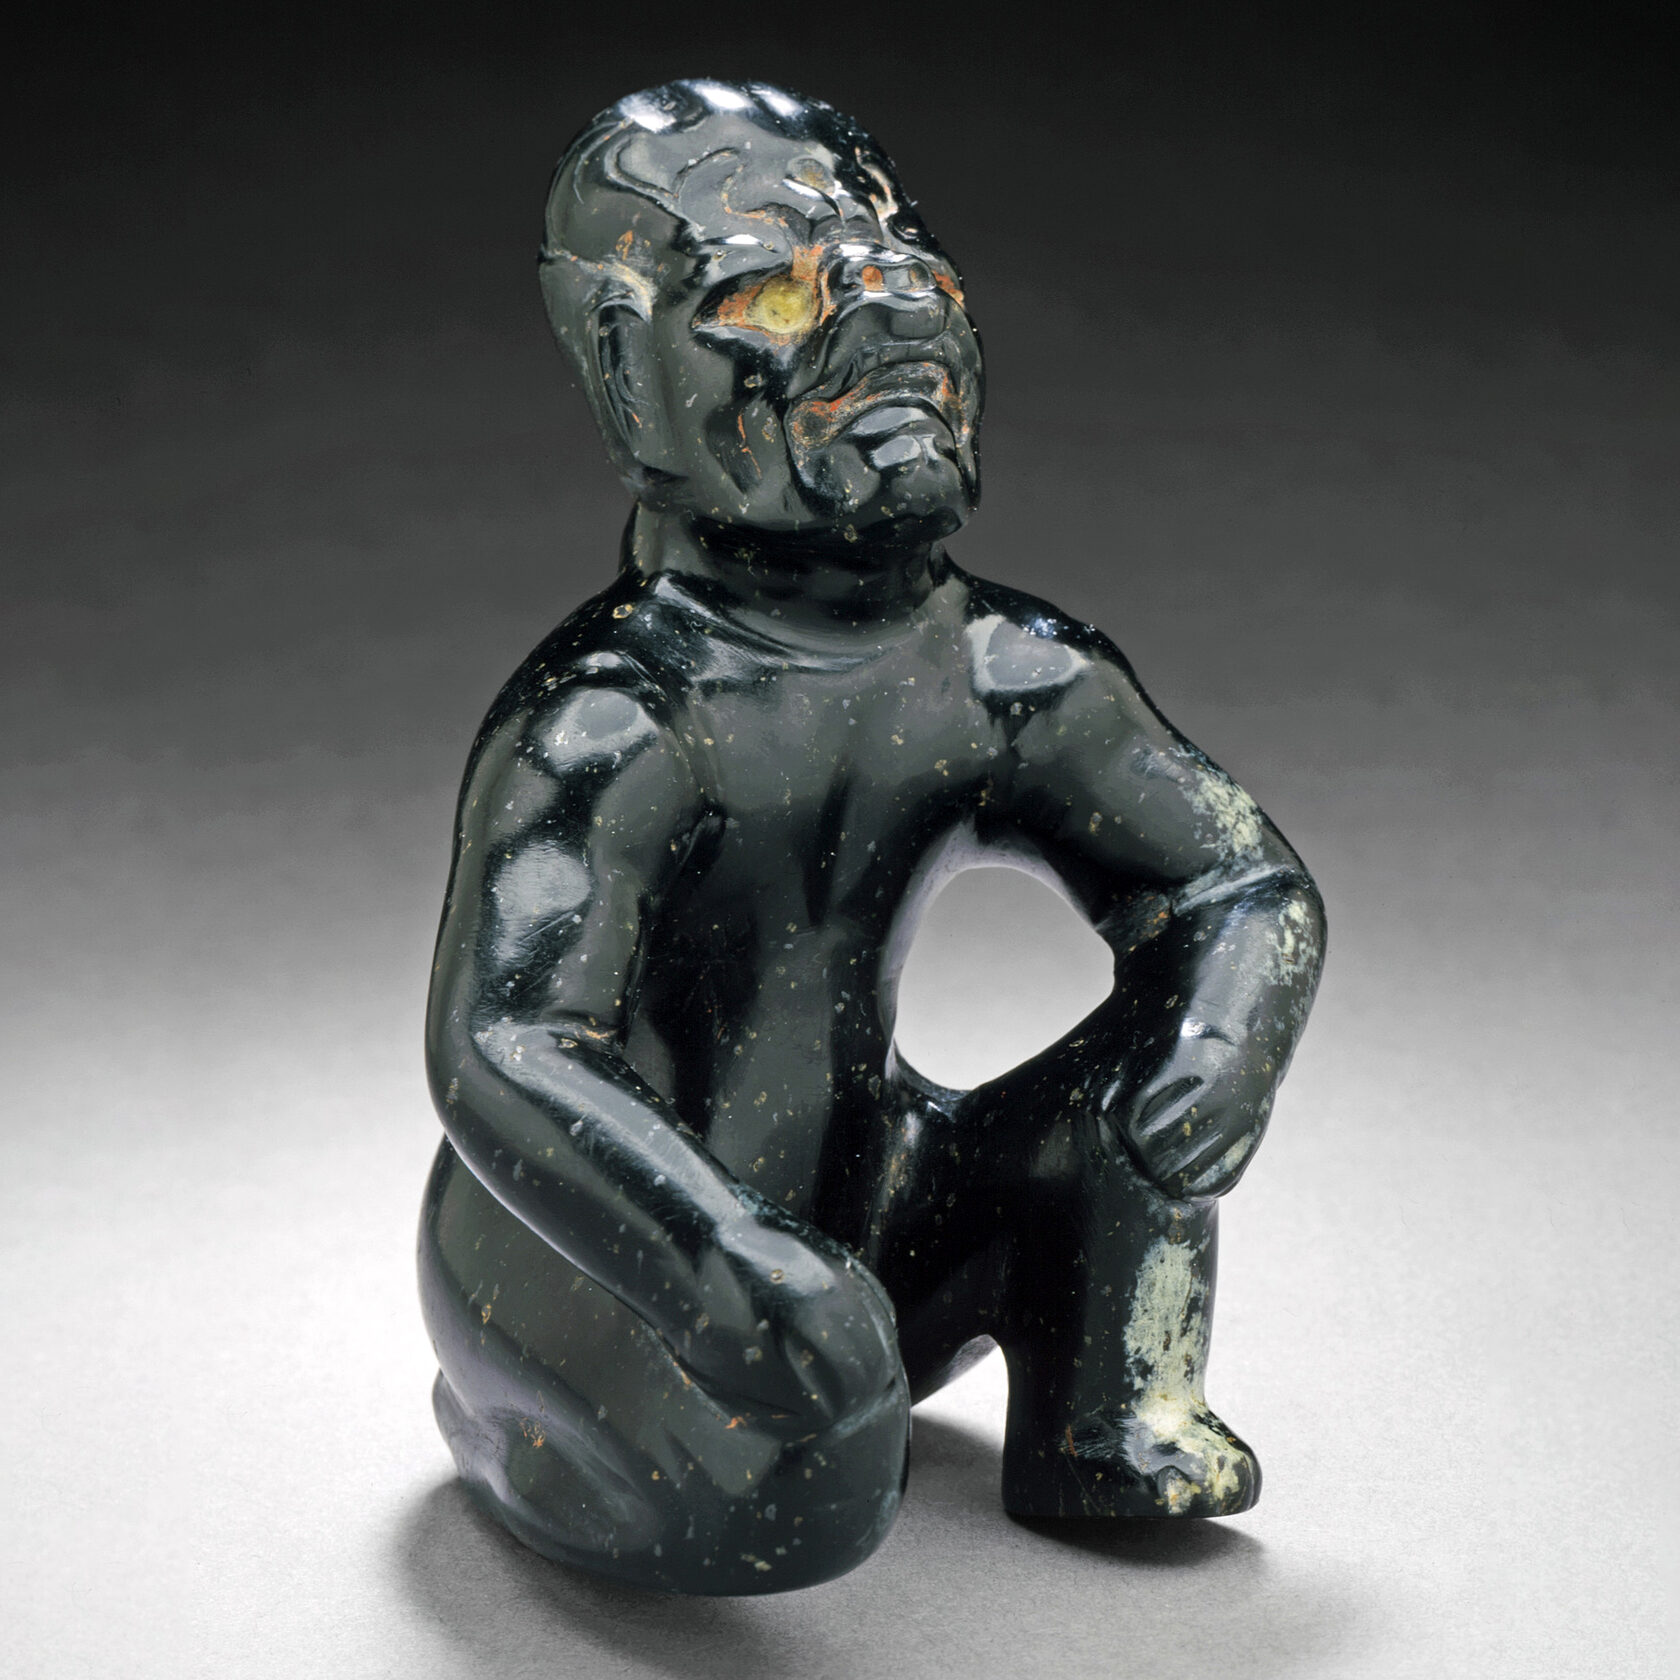 Фигура мужчины в процессе трансформации. Ольмеки, 900-300 гг. до н.э. Коллекция Los Angeles County Museum of Art.